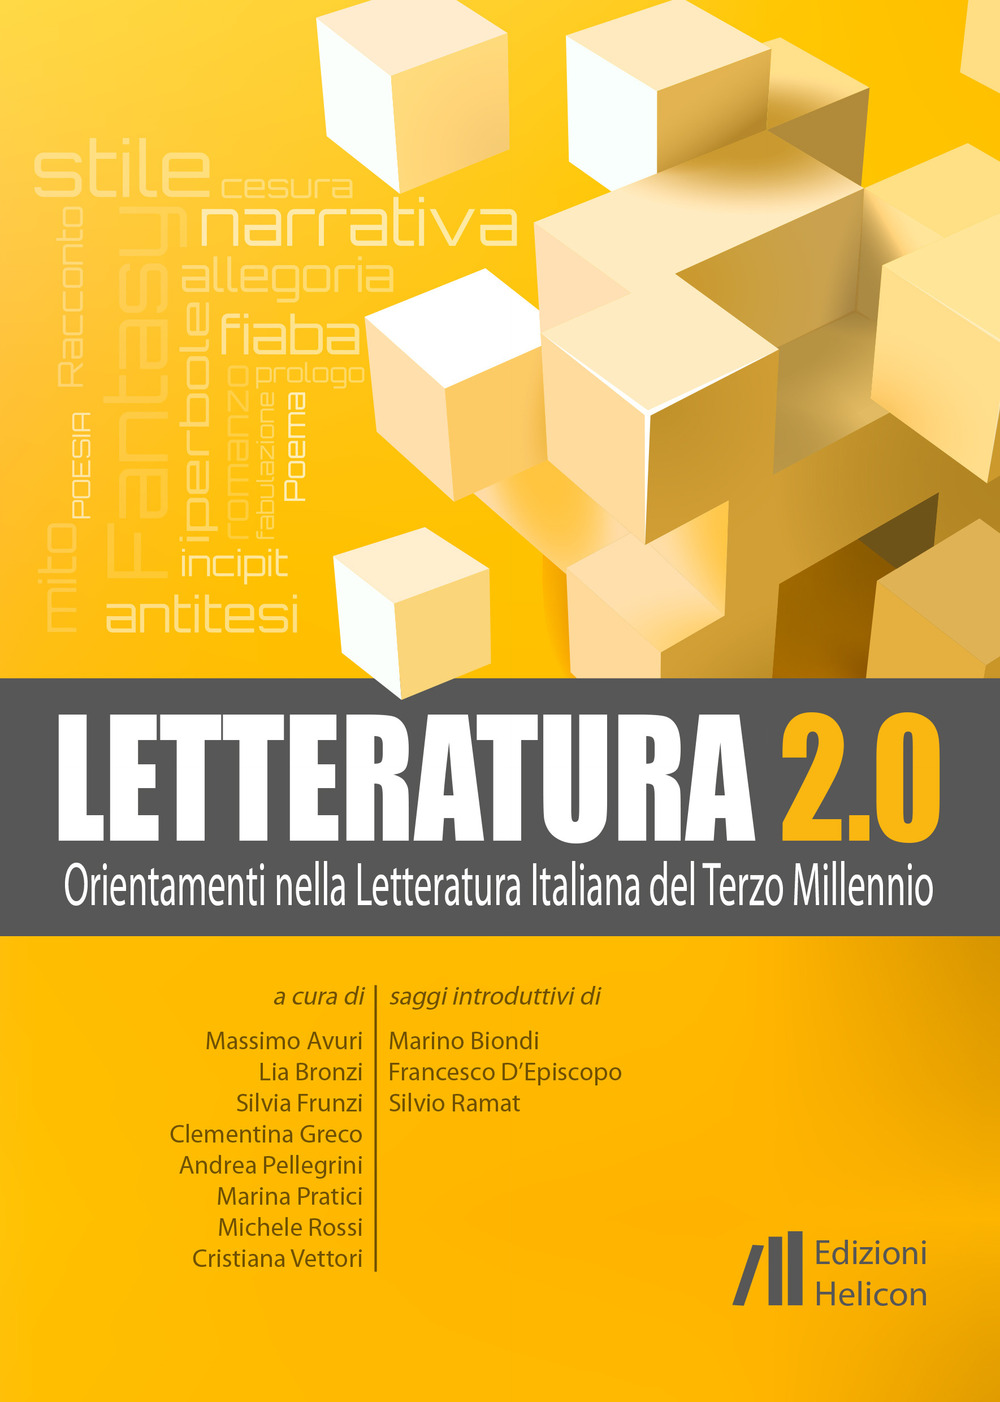 Image of Letteratura 2.0. Orientamenti nella letteratura italiana del terzo millennio